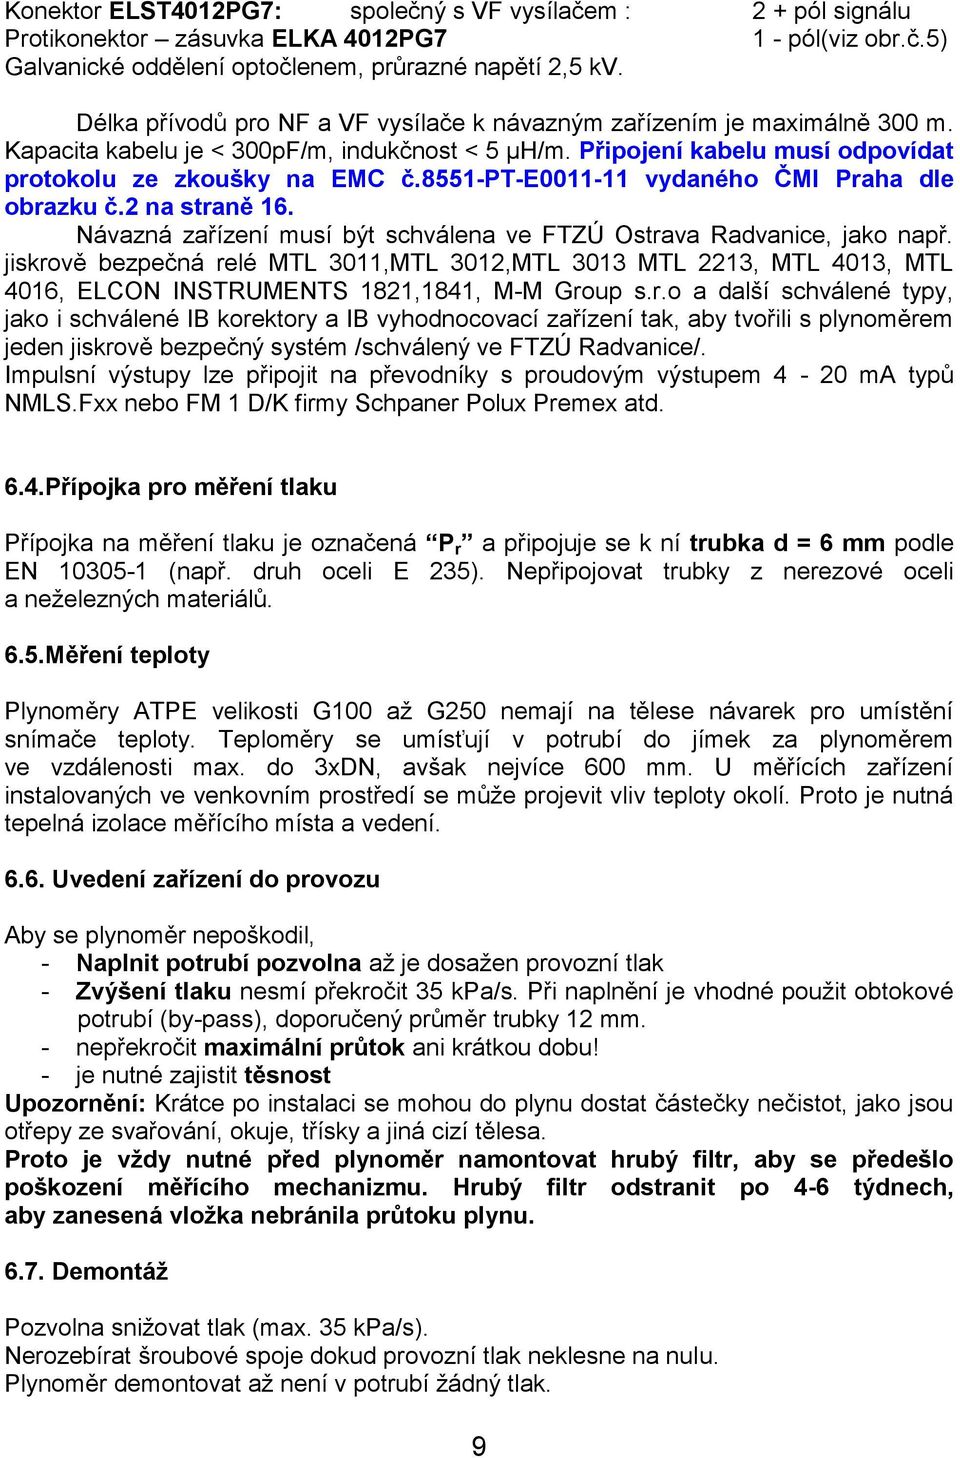 8551-pt-e0011-11 vydaného ČMI Praha dle obrazku č.2 na straně 16. Návazná zařízení musí být schválena ve FTZÚ Ostrava Radvanice, jako např.